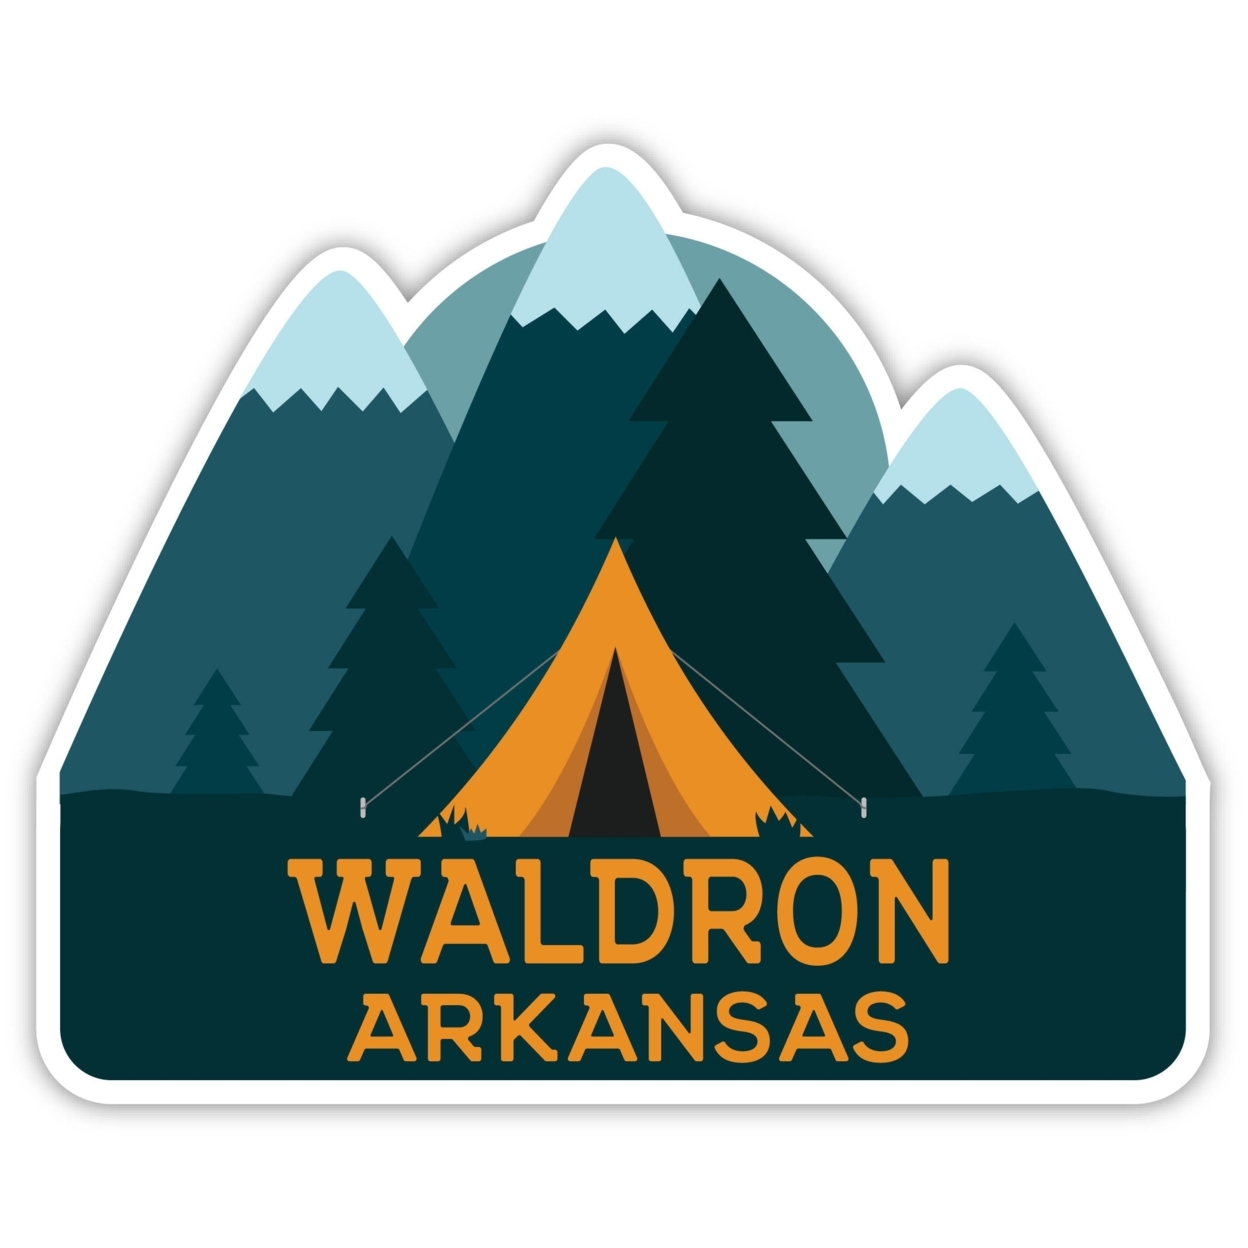 Waldron Arkansas Souvenir Decorative Stickers (Choose Theme And Size) - Single Unit, 2-Inch, Tent